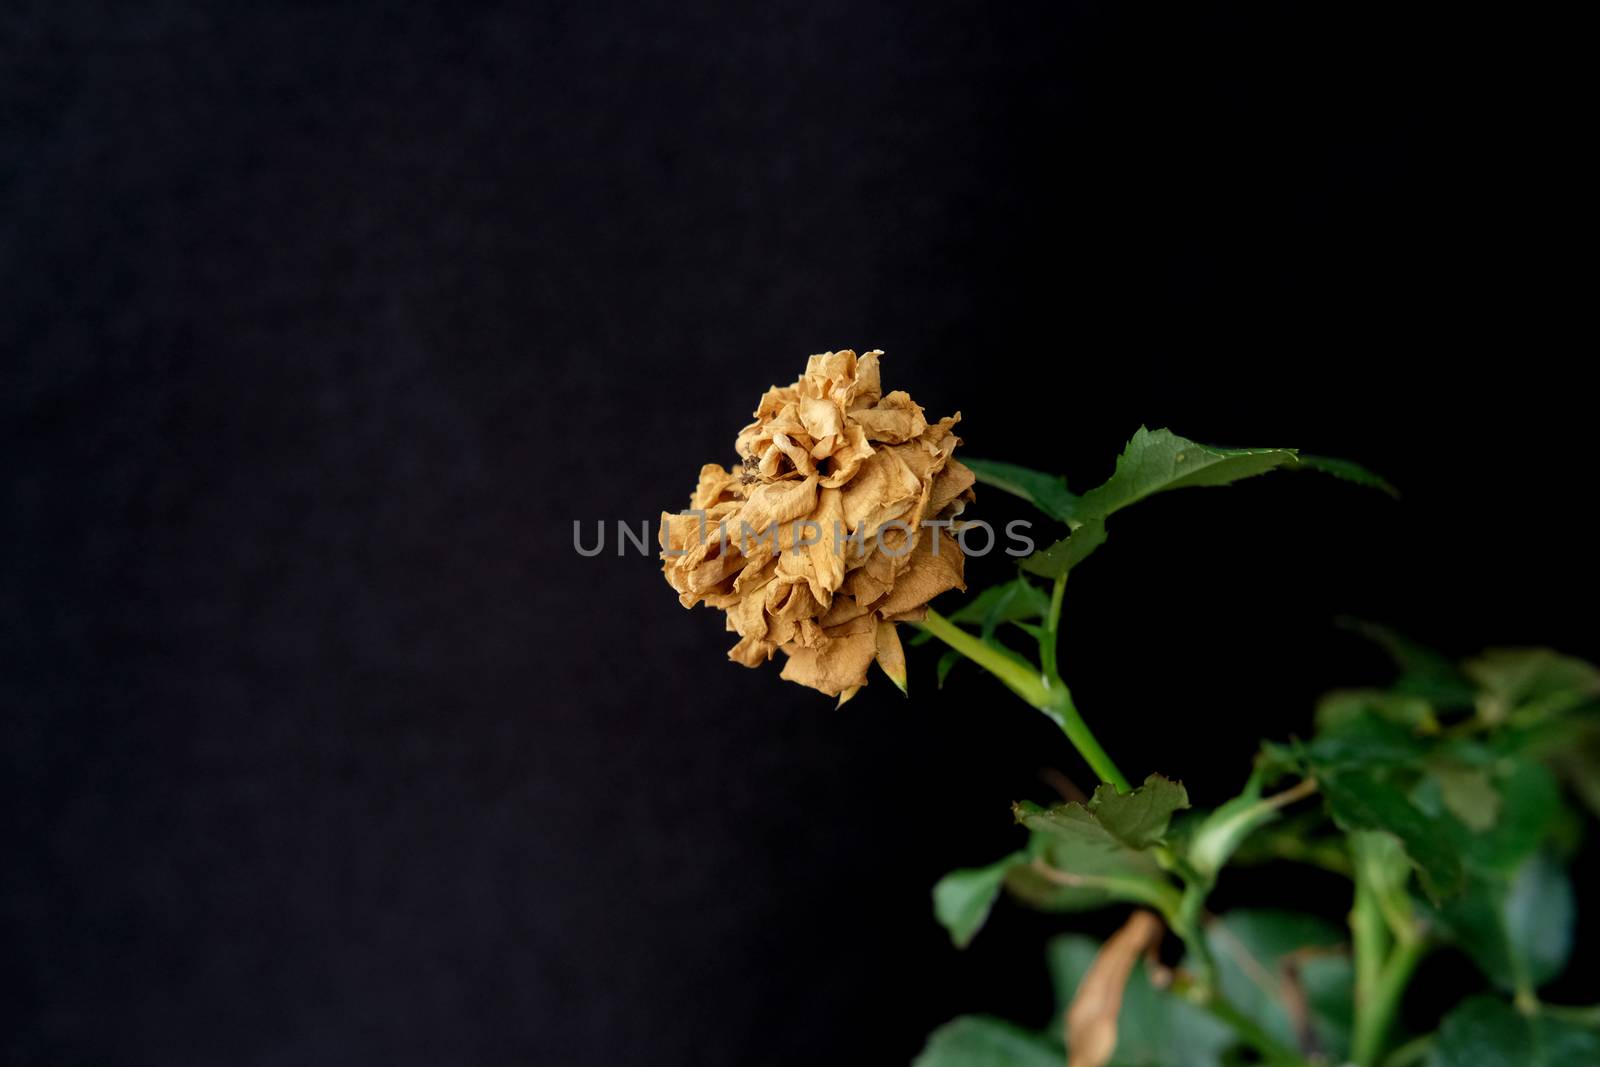 dried petal, brown rose flower on black background by Macrostud